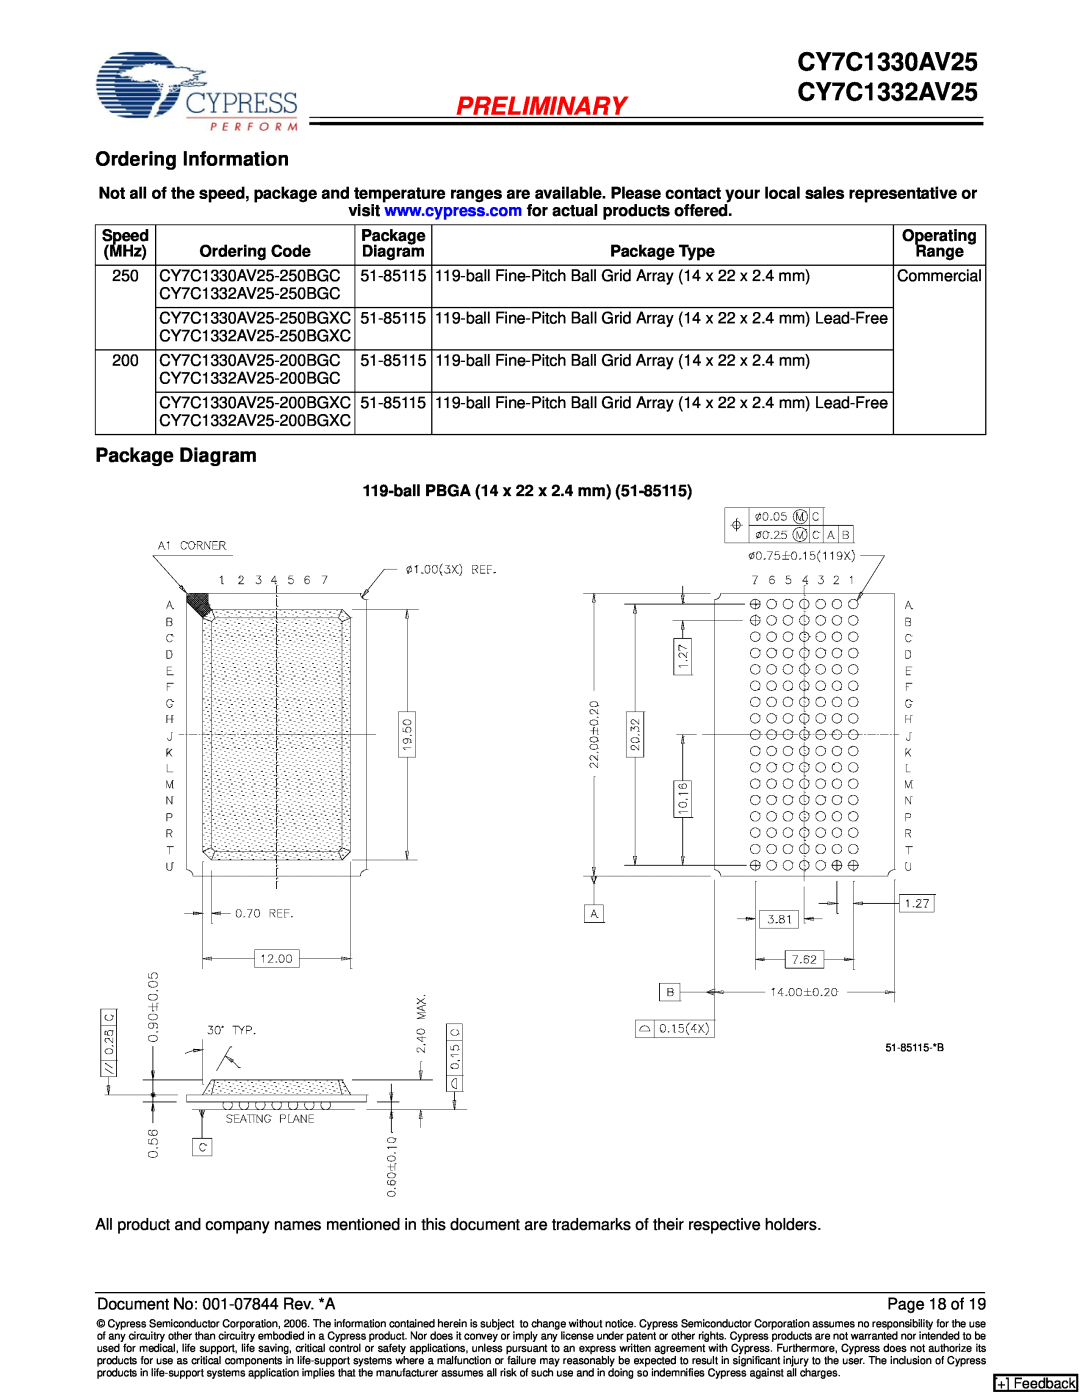 Cypress CY7C1330AV25 manual Ordering Information, Package Diagram, PRELIMINARYCY7C1332AV25 